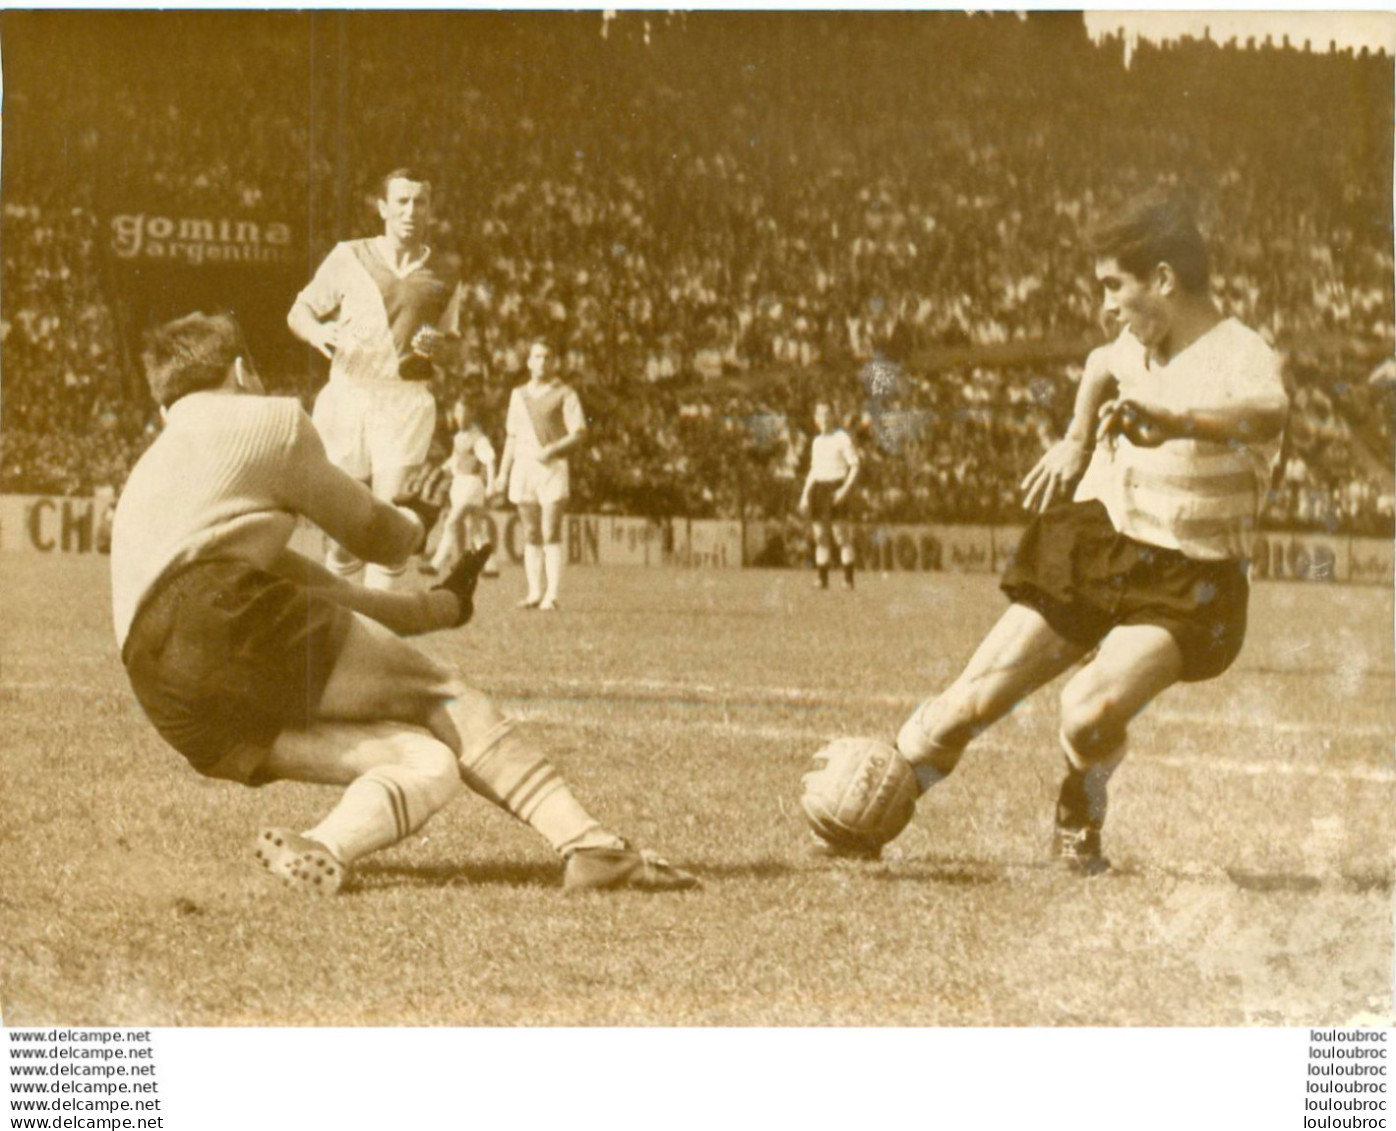 FOOTBALL 05/1961  R.C. PARIS MONACO VICTOIRE DE PARIS  VAN SAM DEVANT GAROFALO ET BIANCHERI  PHOTO PRESSE 18X13CM - Deportes